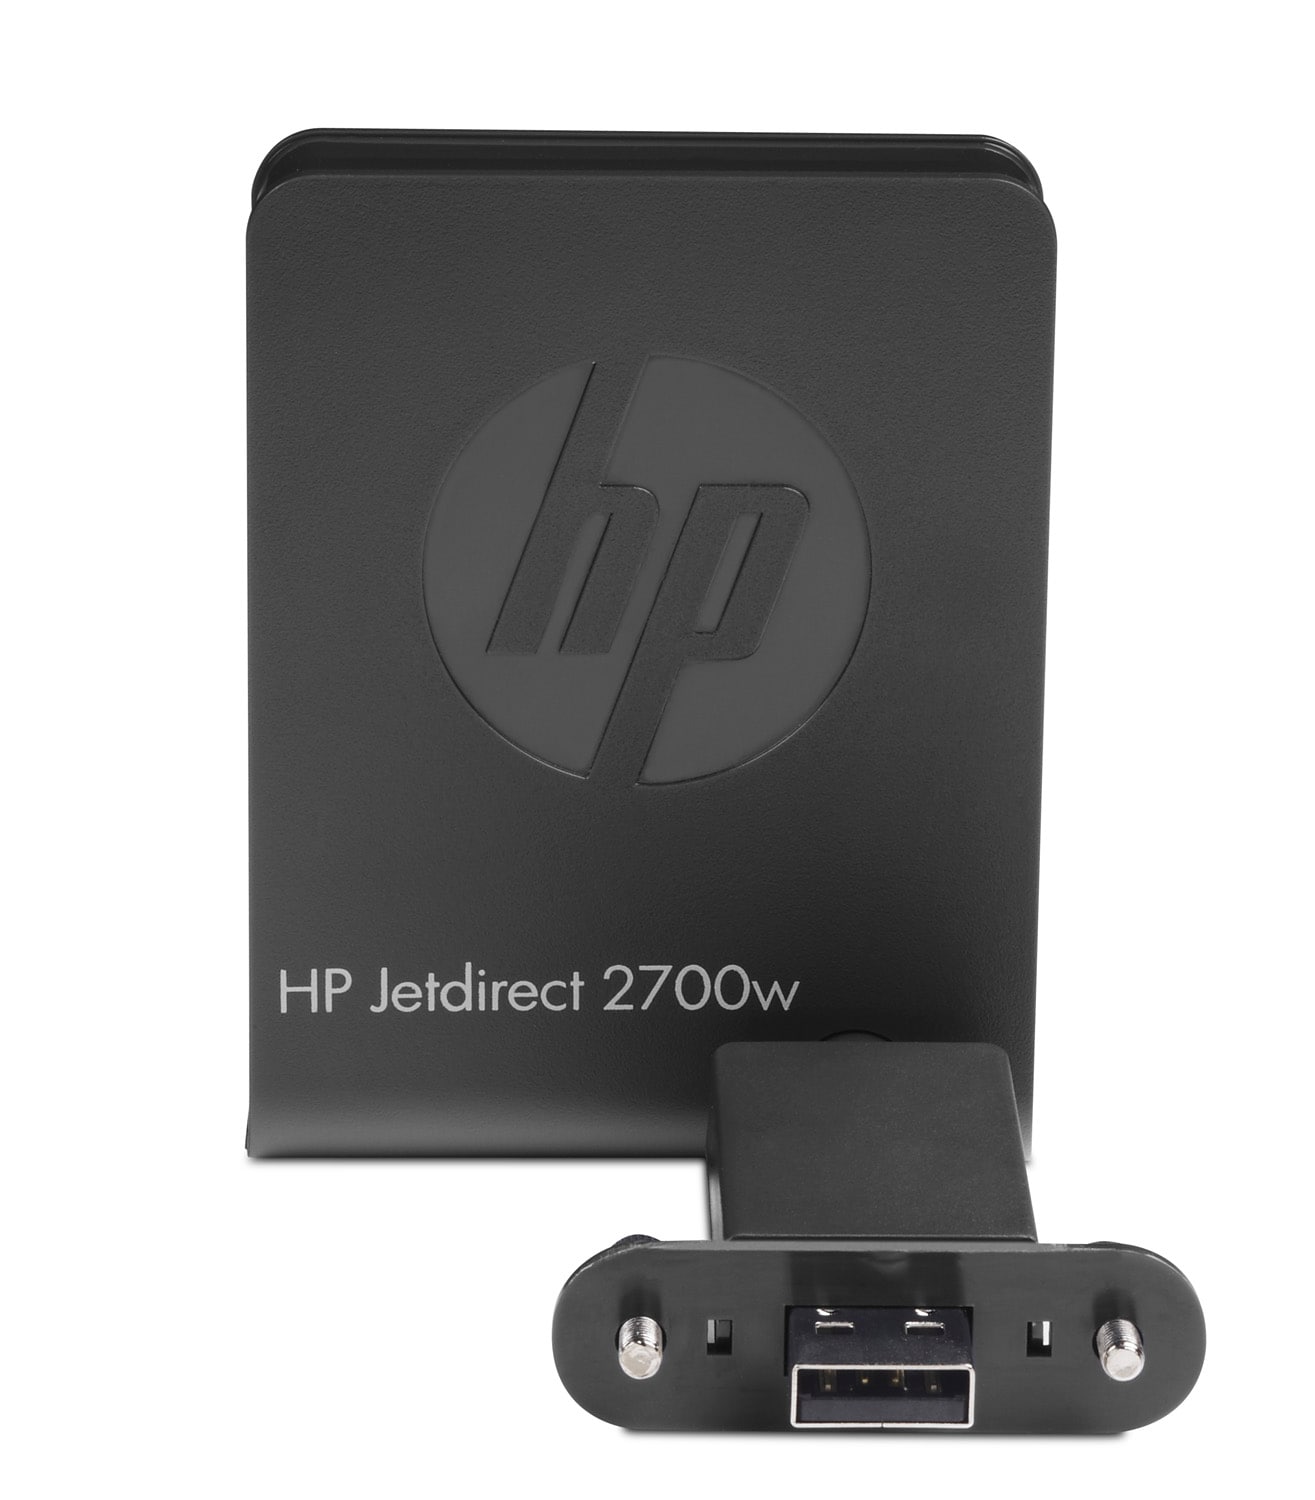 HP J8026A Jetdirect 2700w USB vezeték nélküli nyomtatószerver